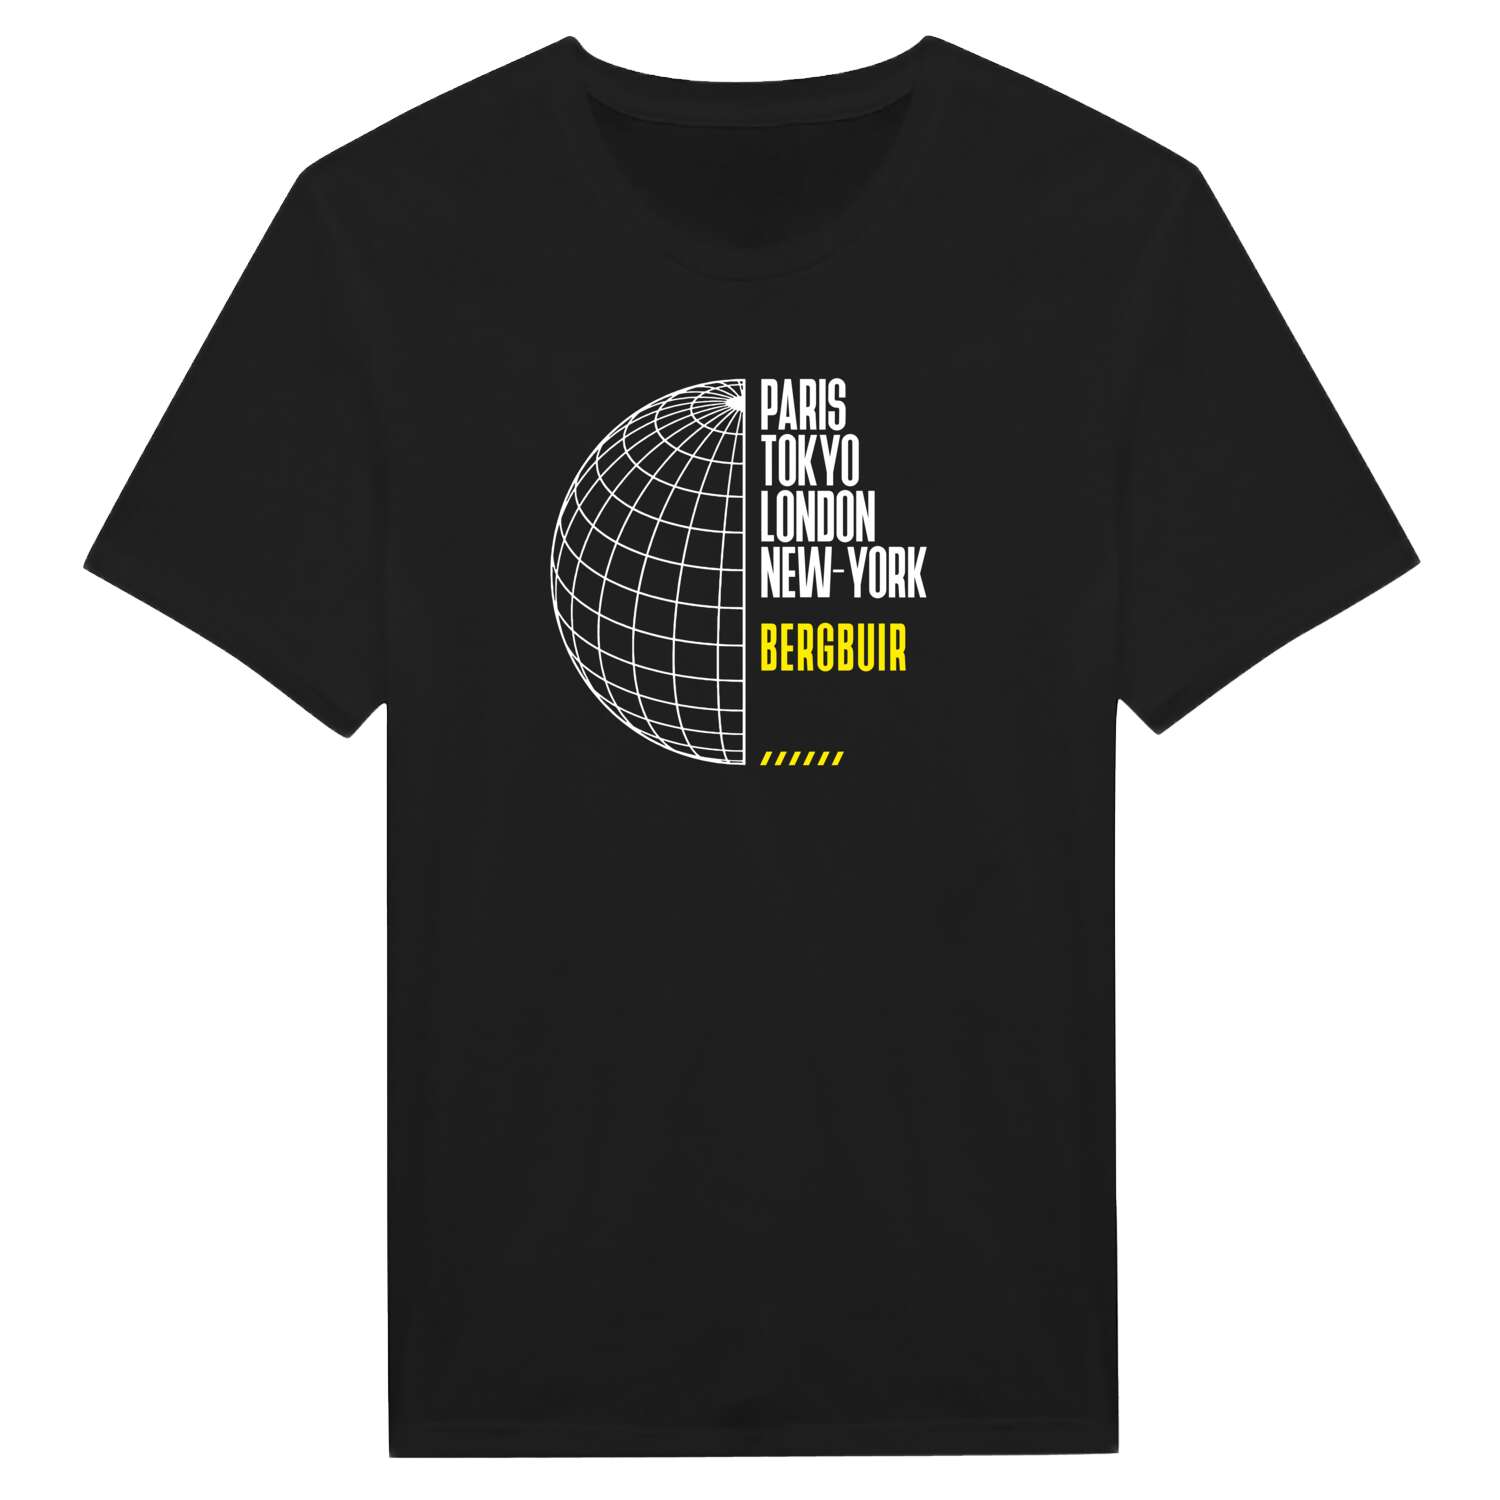 Bergbuir T-Shirt »Paris Tokyo London«